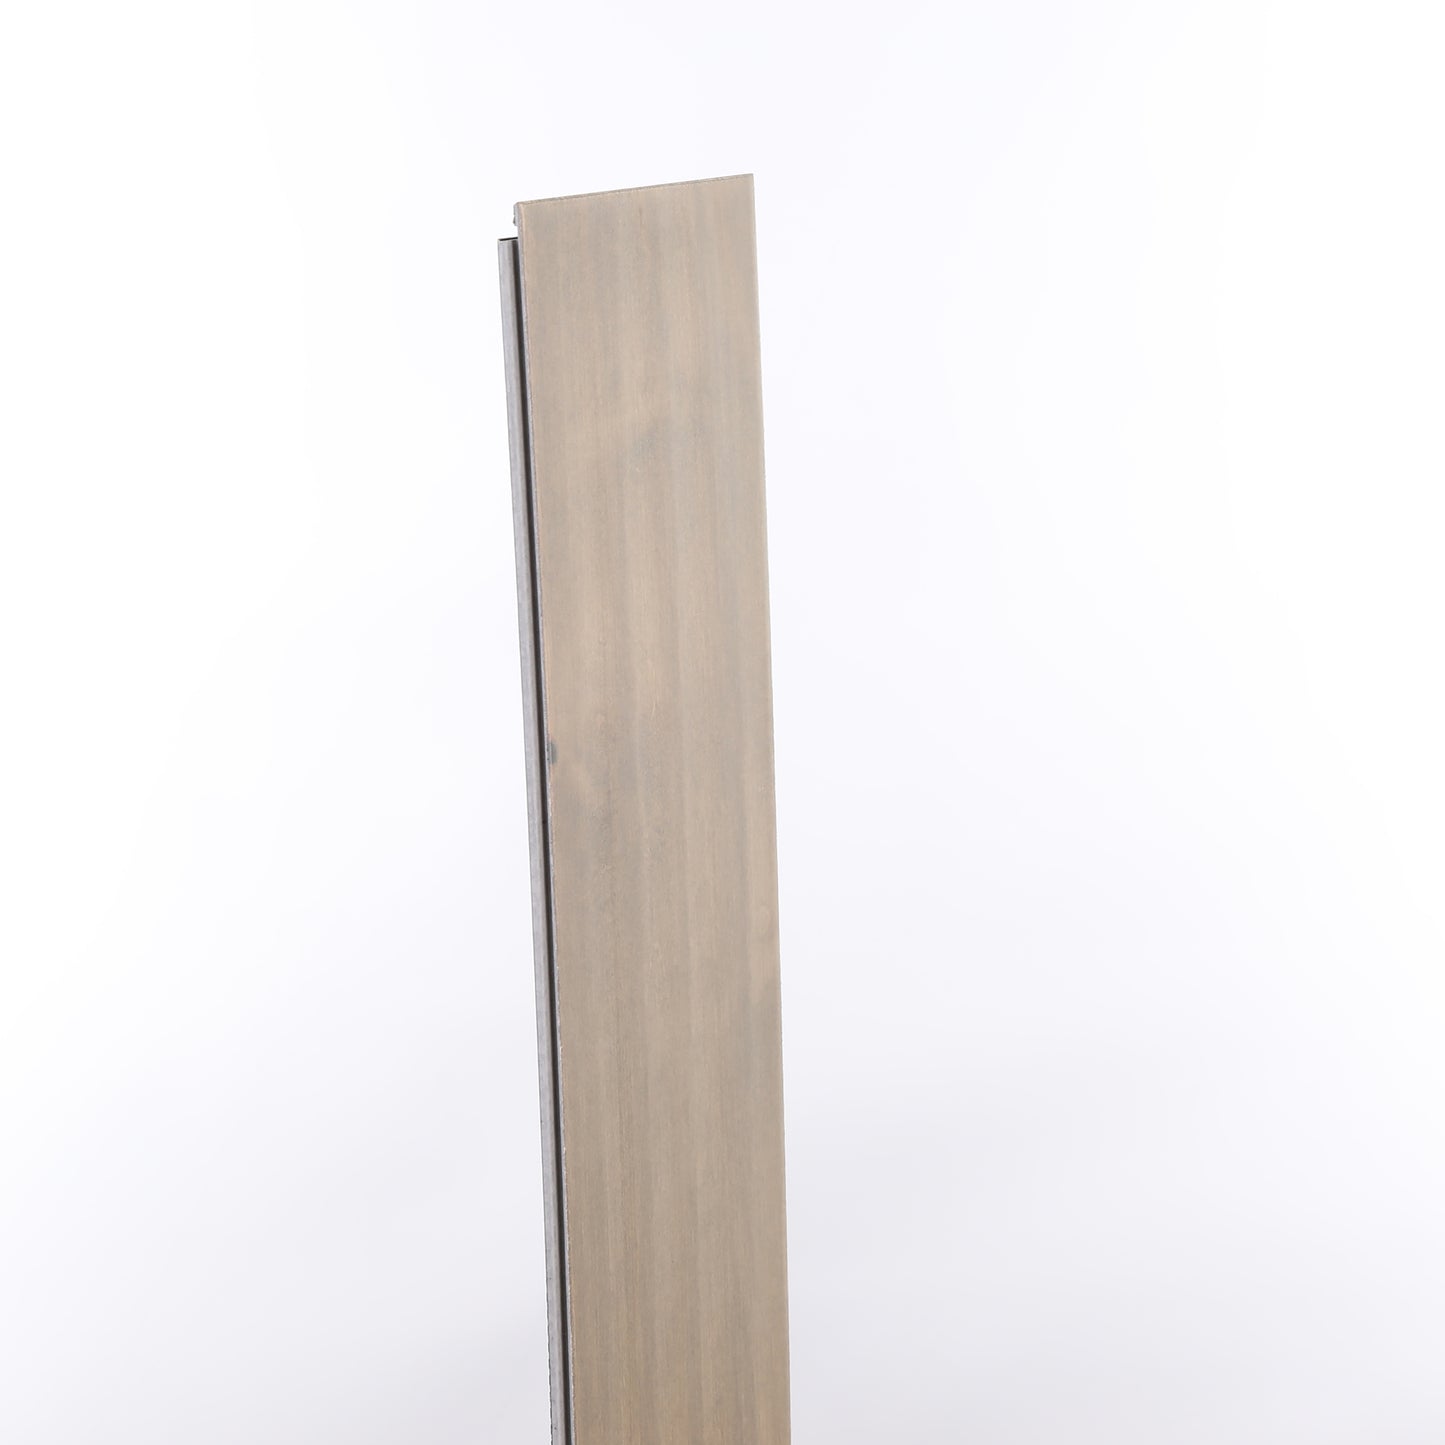 7mm Winter Stone Waterproof Engineered Hardwood Flooring 5 in. Wide x Varying Length Long